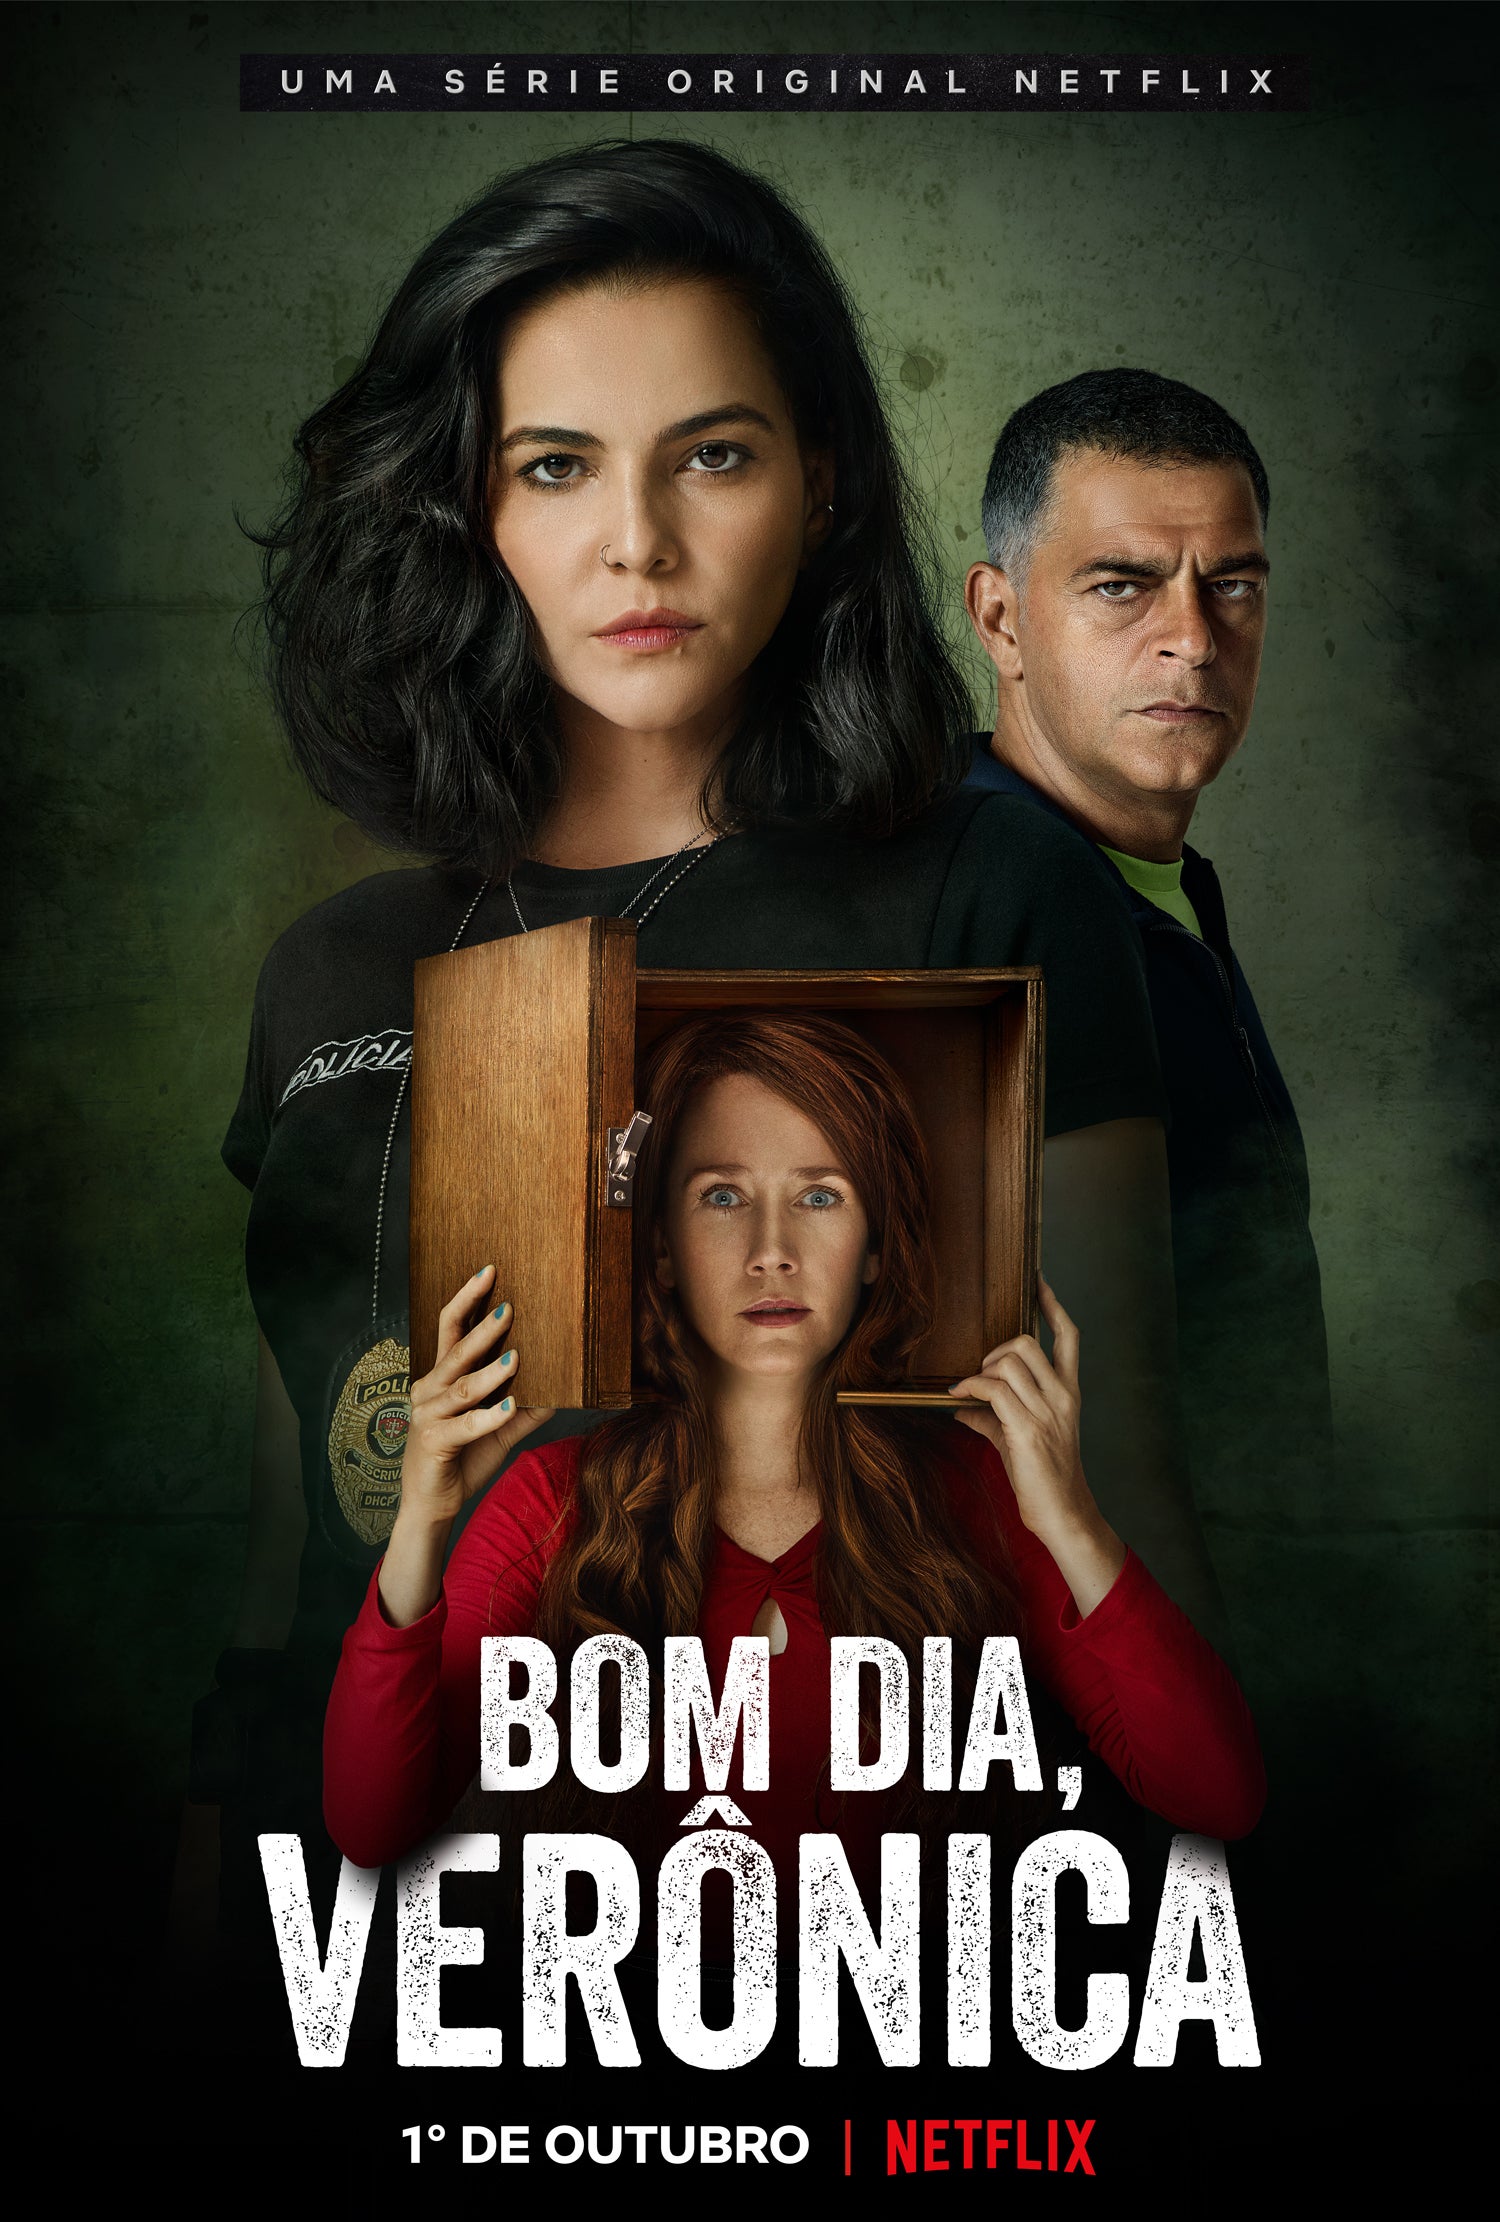 TV ratings for Bom Dia, Verônica in Denmark. Netflix TV series